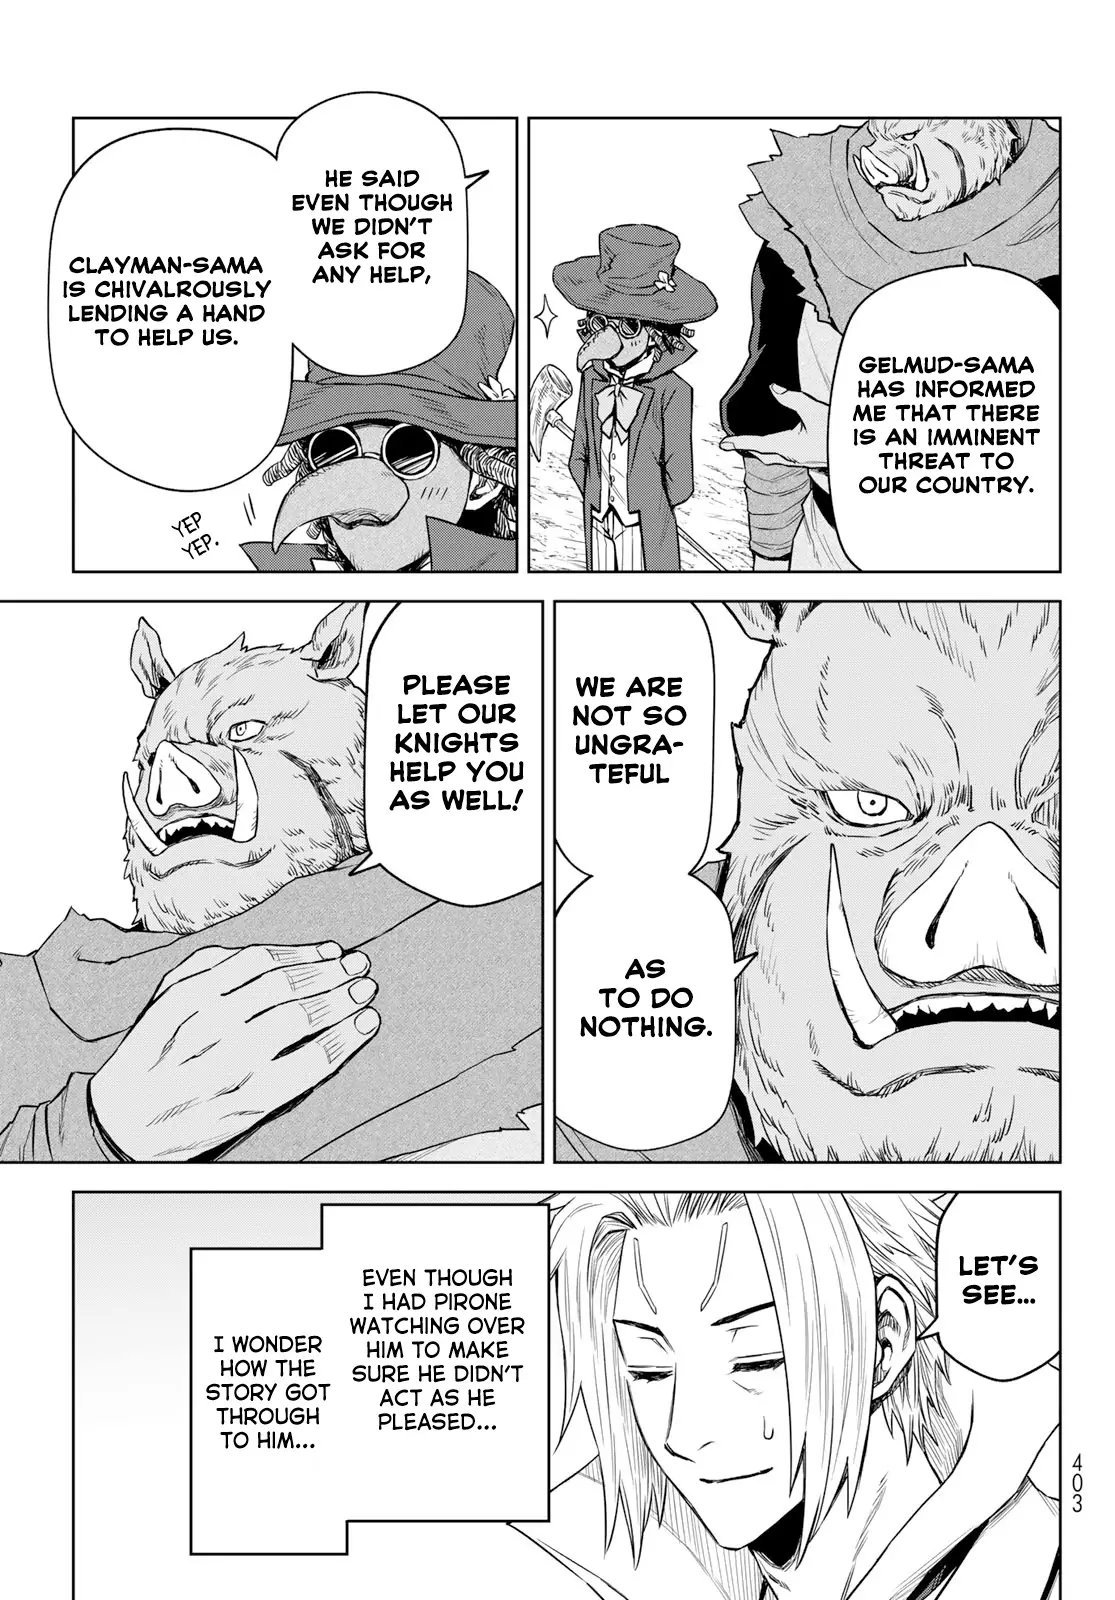 Tensei Shitara Slime Datta Ken: Clayman Revenge - 11 page 7-09a1550b